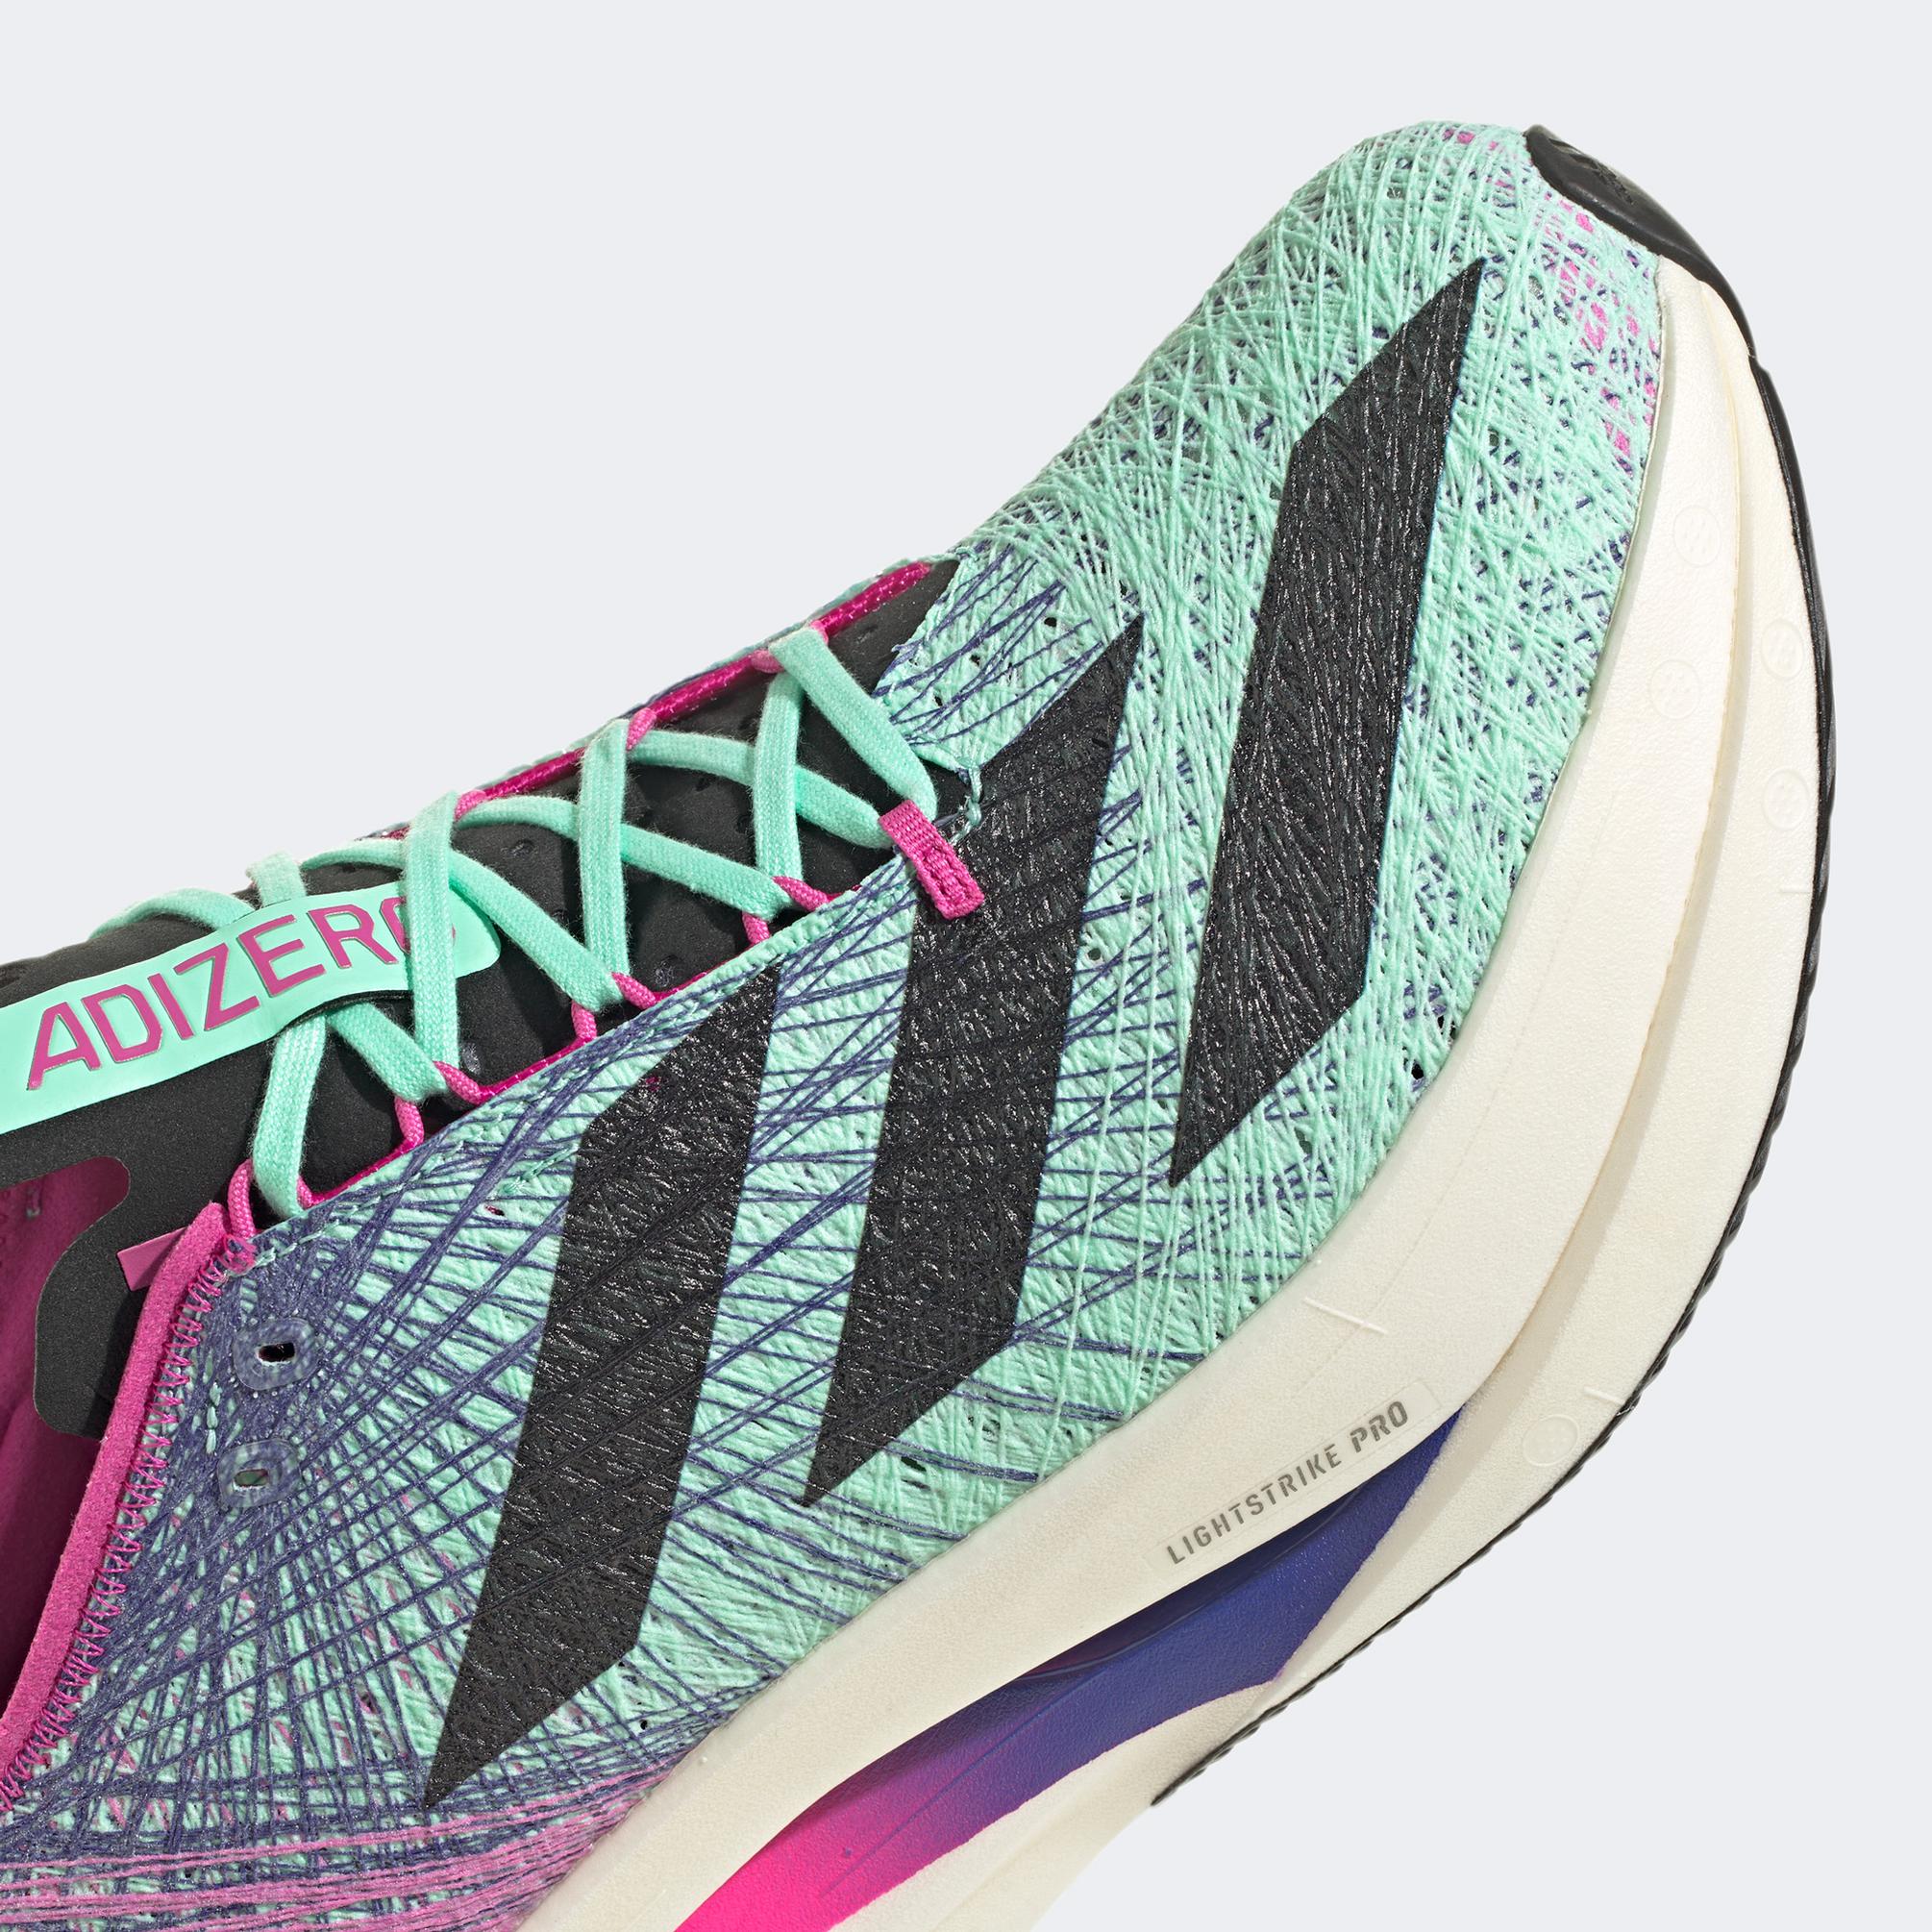  adidas Adizero Prime x Strung Kadın Yeşil Spor Ayakkabı